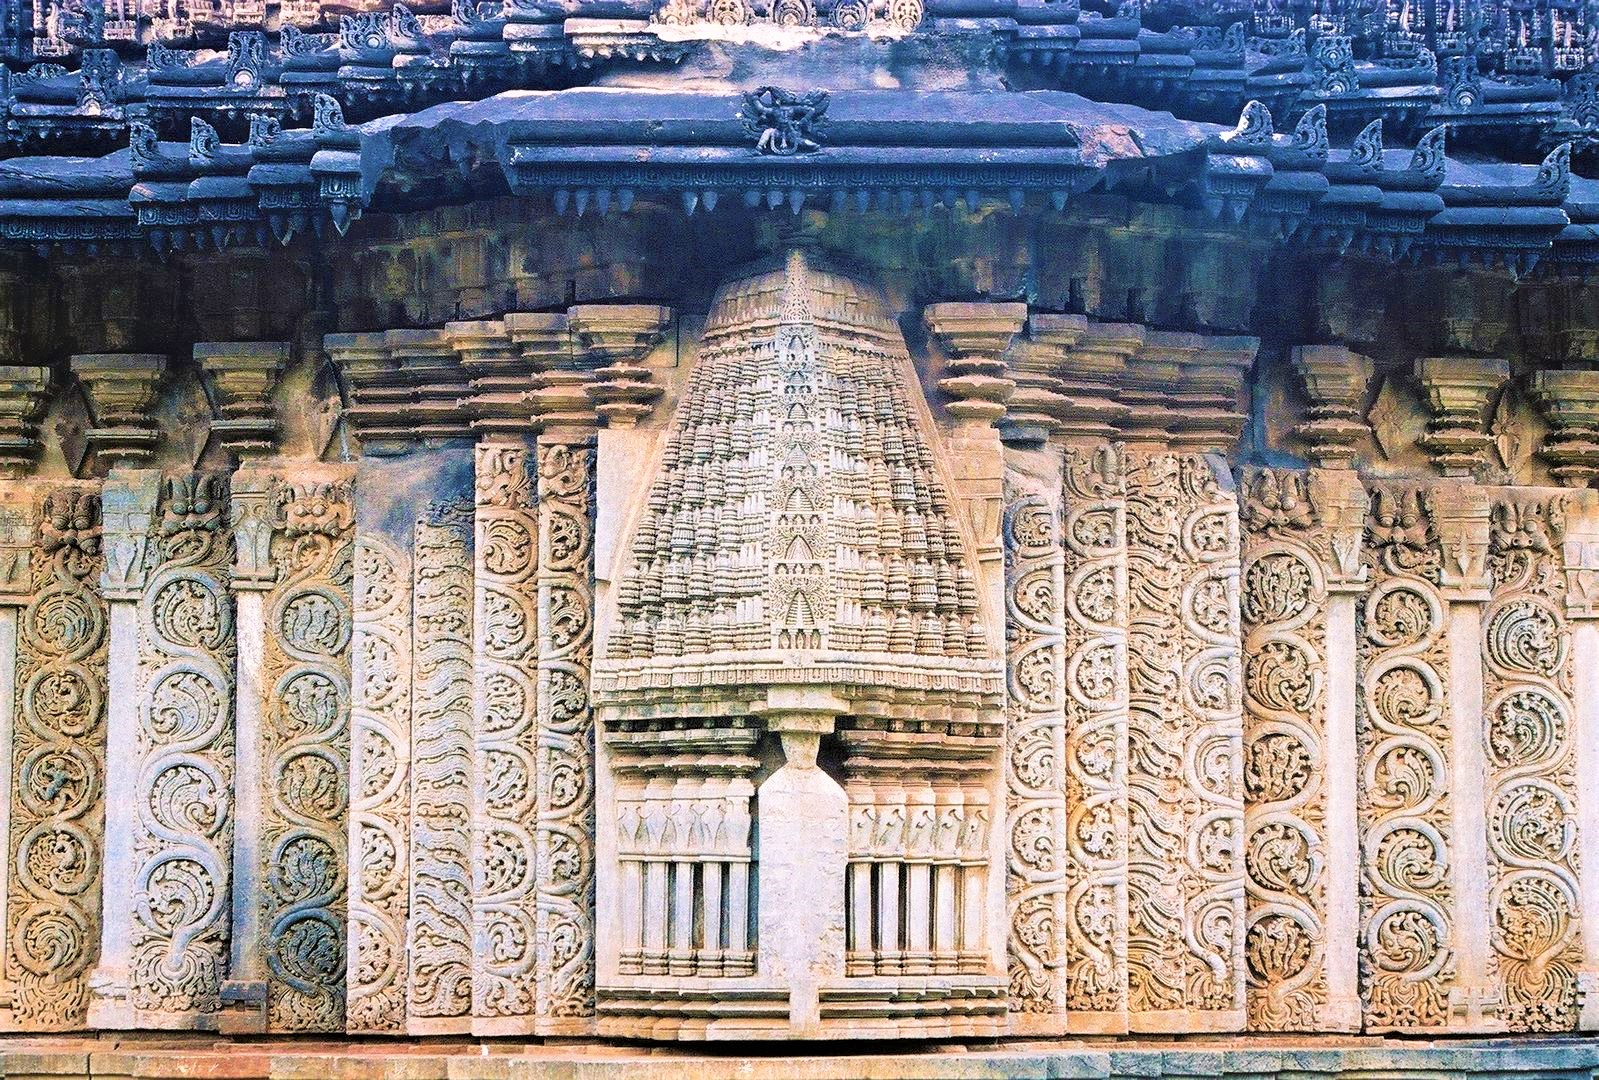 Great Art Amruteshvara Temple